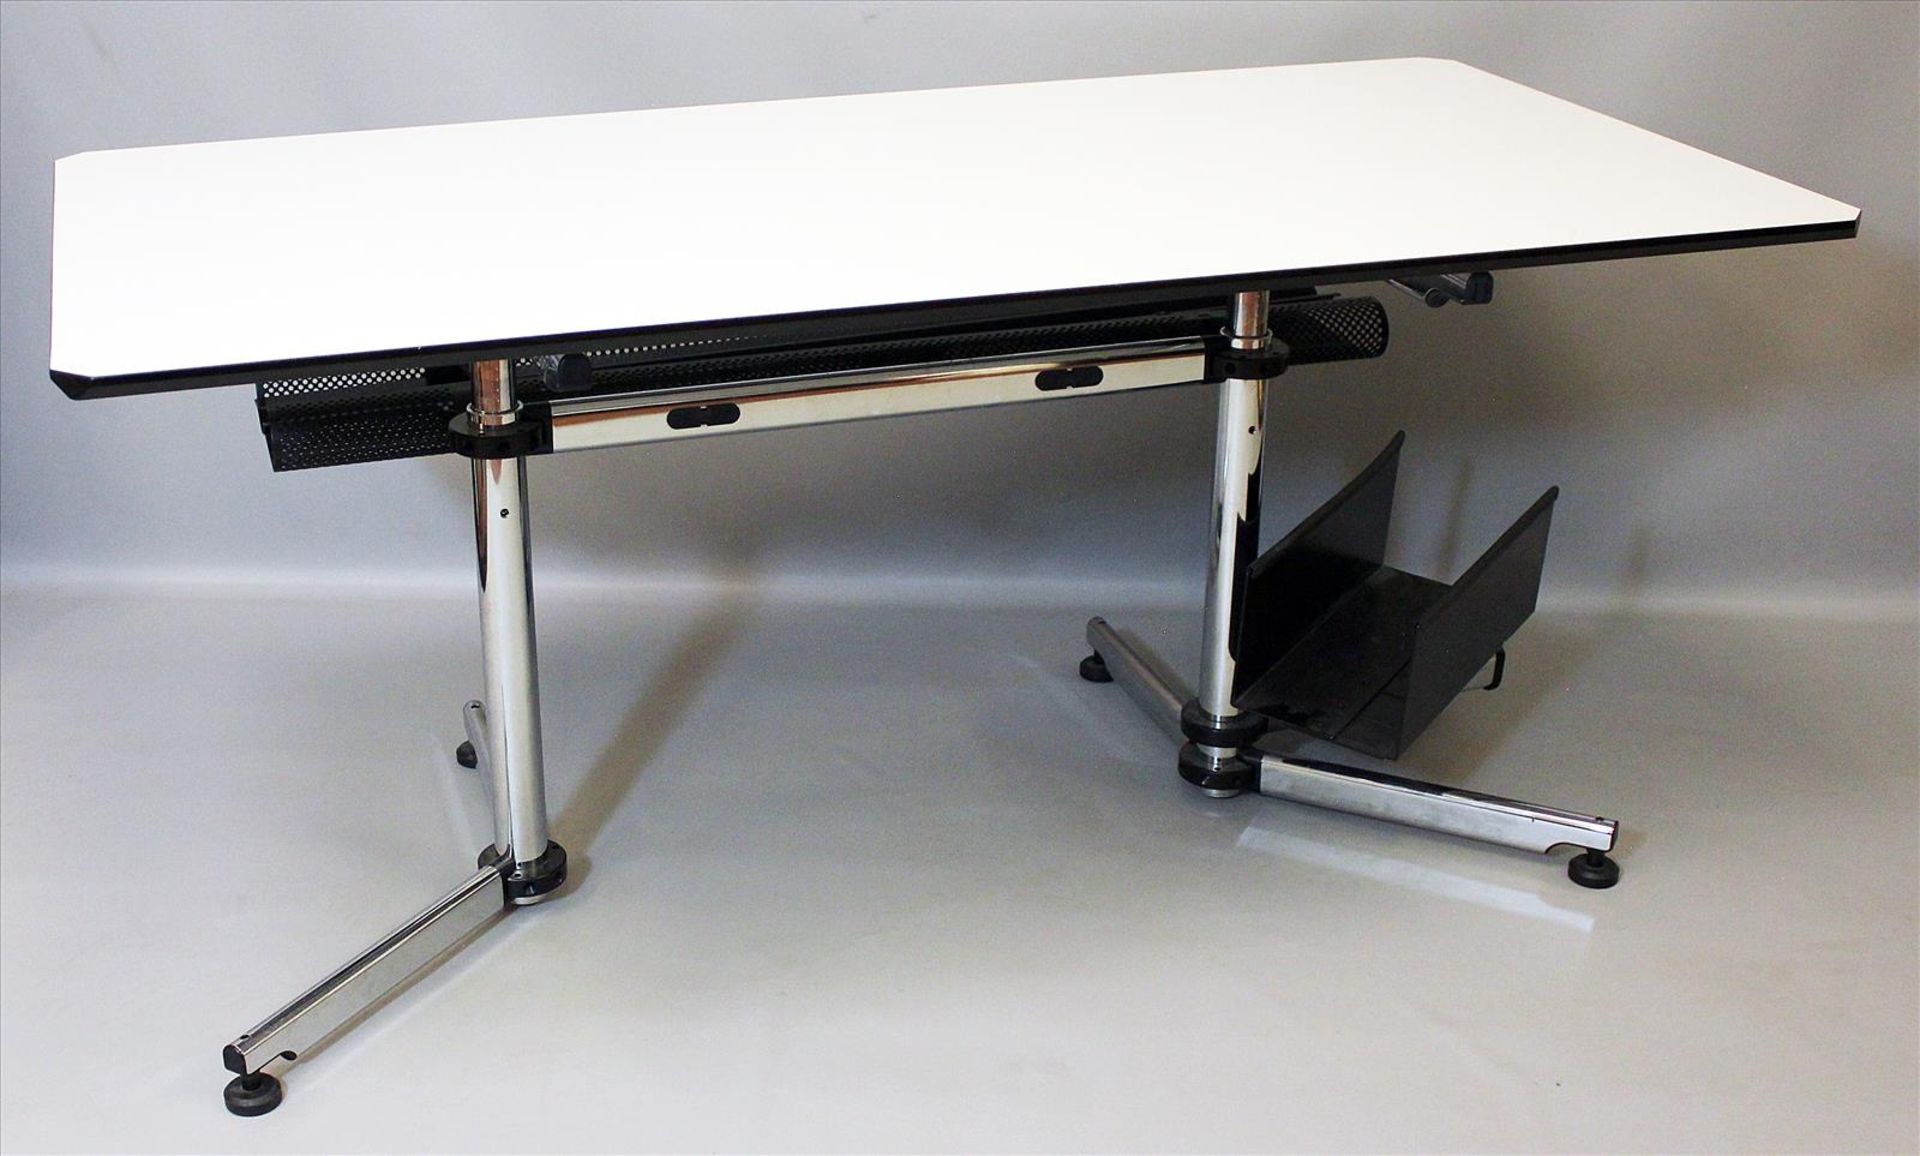 Schreibtisch "Kitos", USM Haller.Verchromtes Stahlrohr, weiße Linoleumbeschichtung mit schwarz-